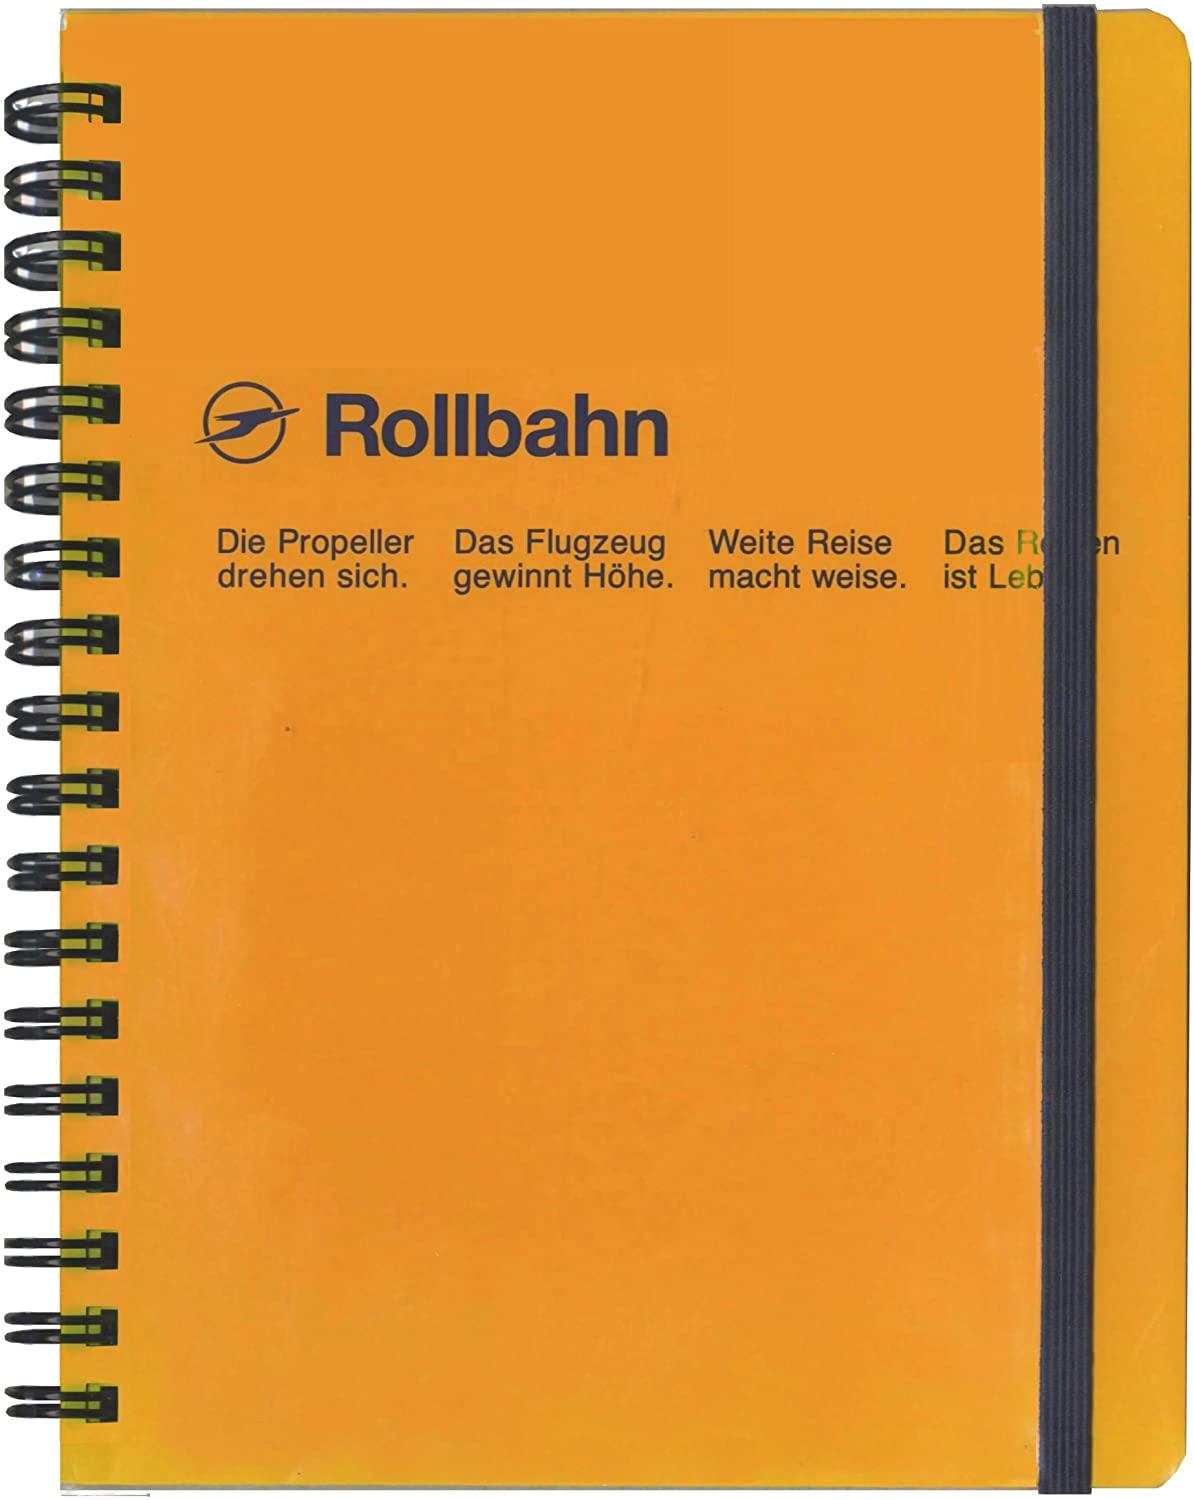 【名探偵コナン】Rollbahn（ロルバーン）おすすめのメモ帳